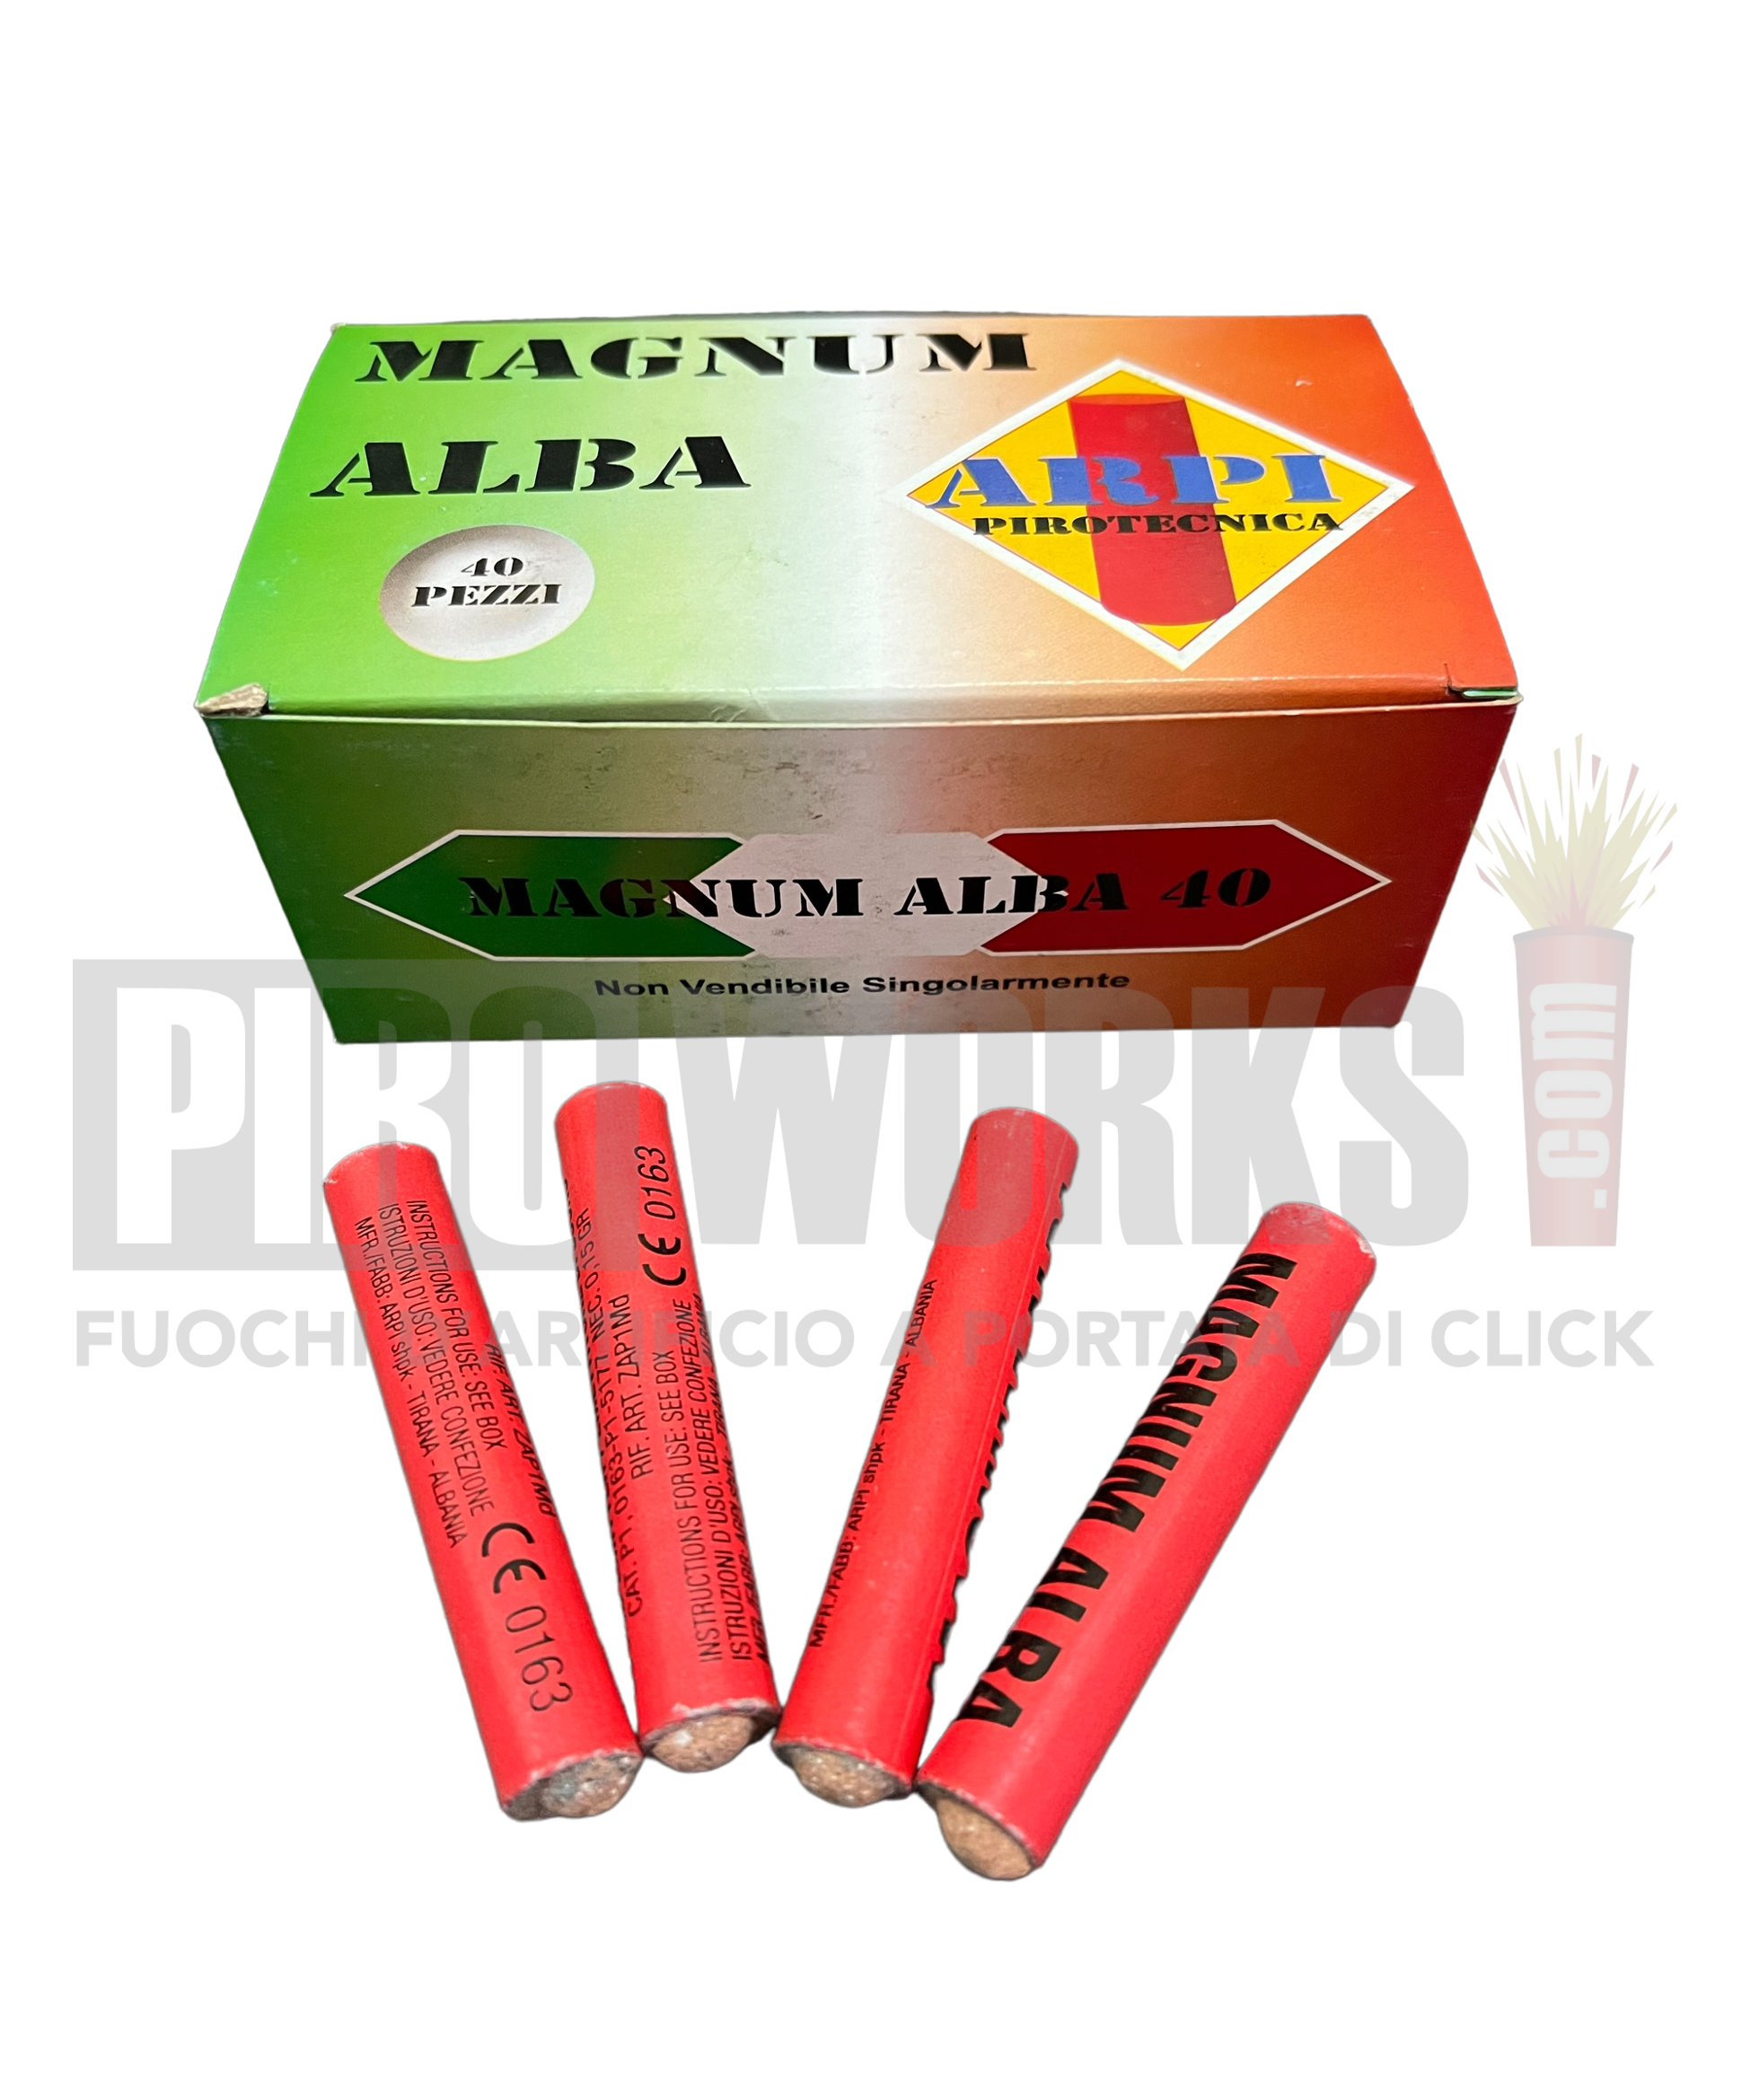 Magnum Alba Arpi – Piroworks